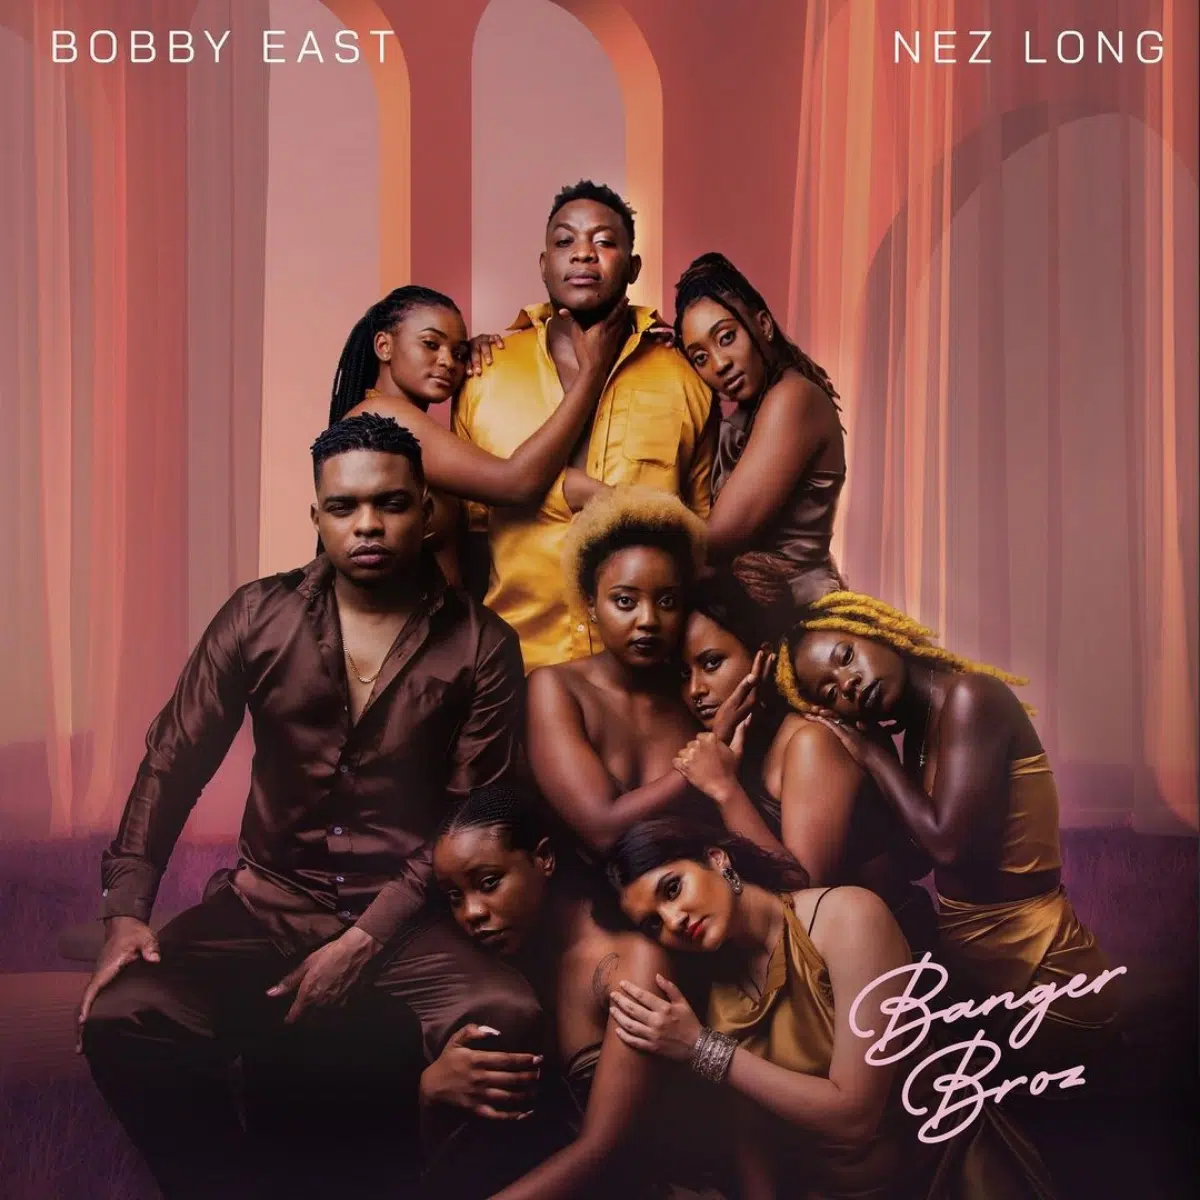 DOWNLOAD: Bobby East & Nez Long – “Sininga Kondwelese Bonse” Mp3